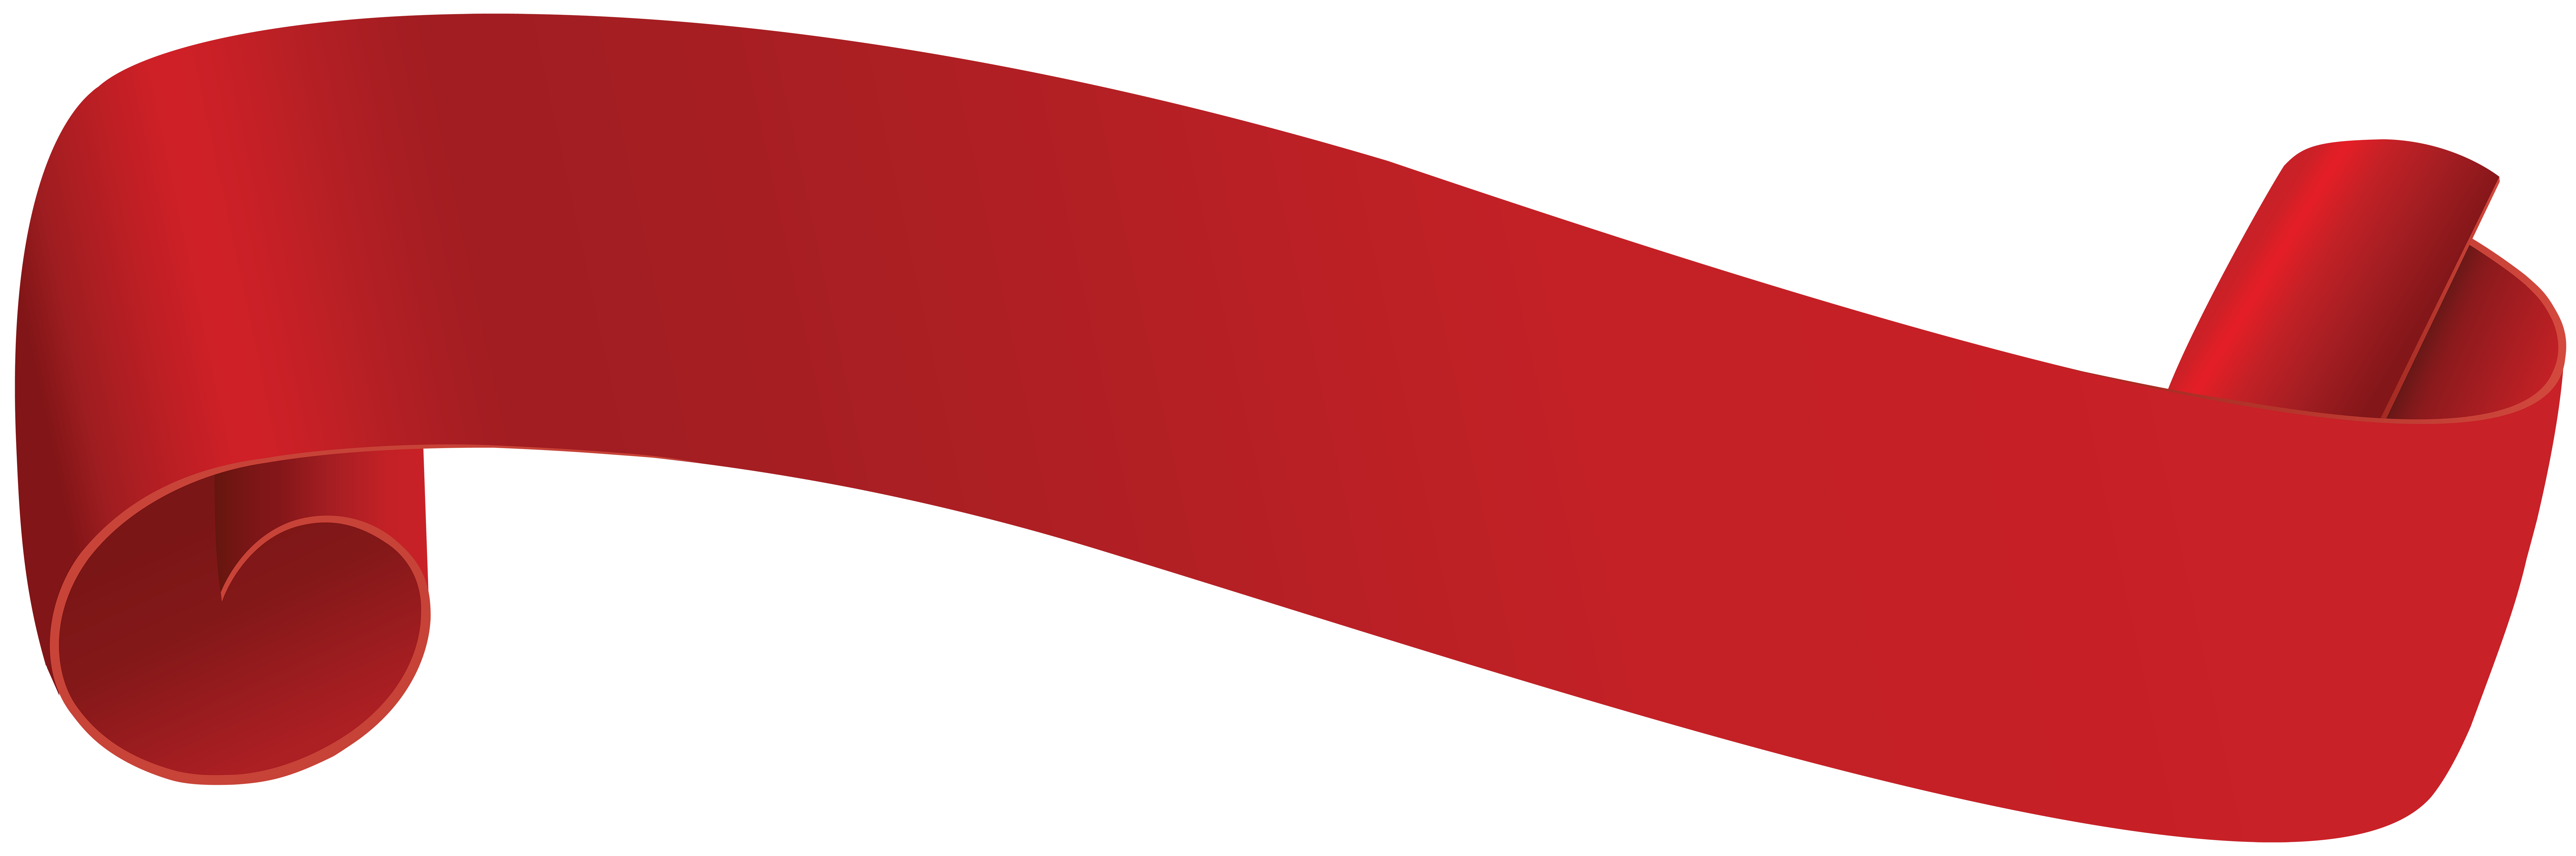 Red Banner Transparent Clip Art PNG Image